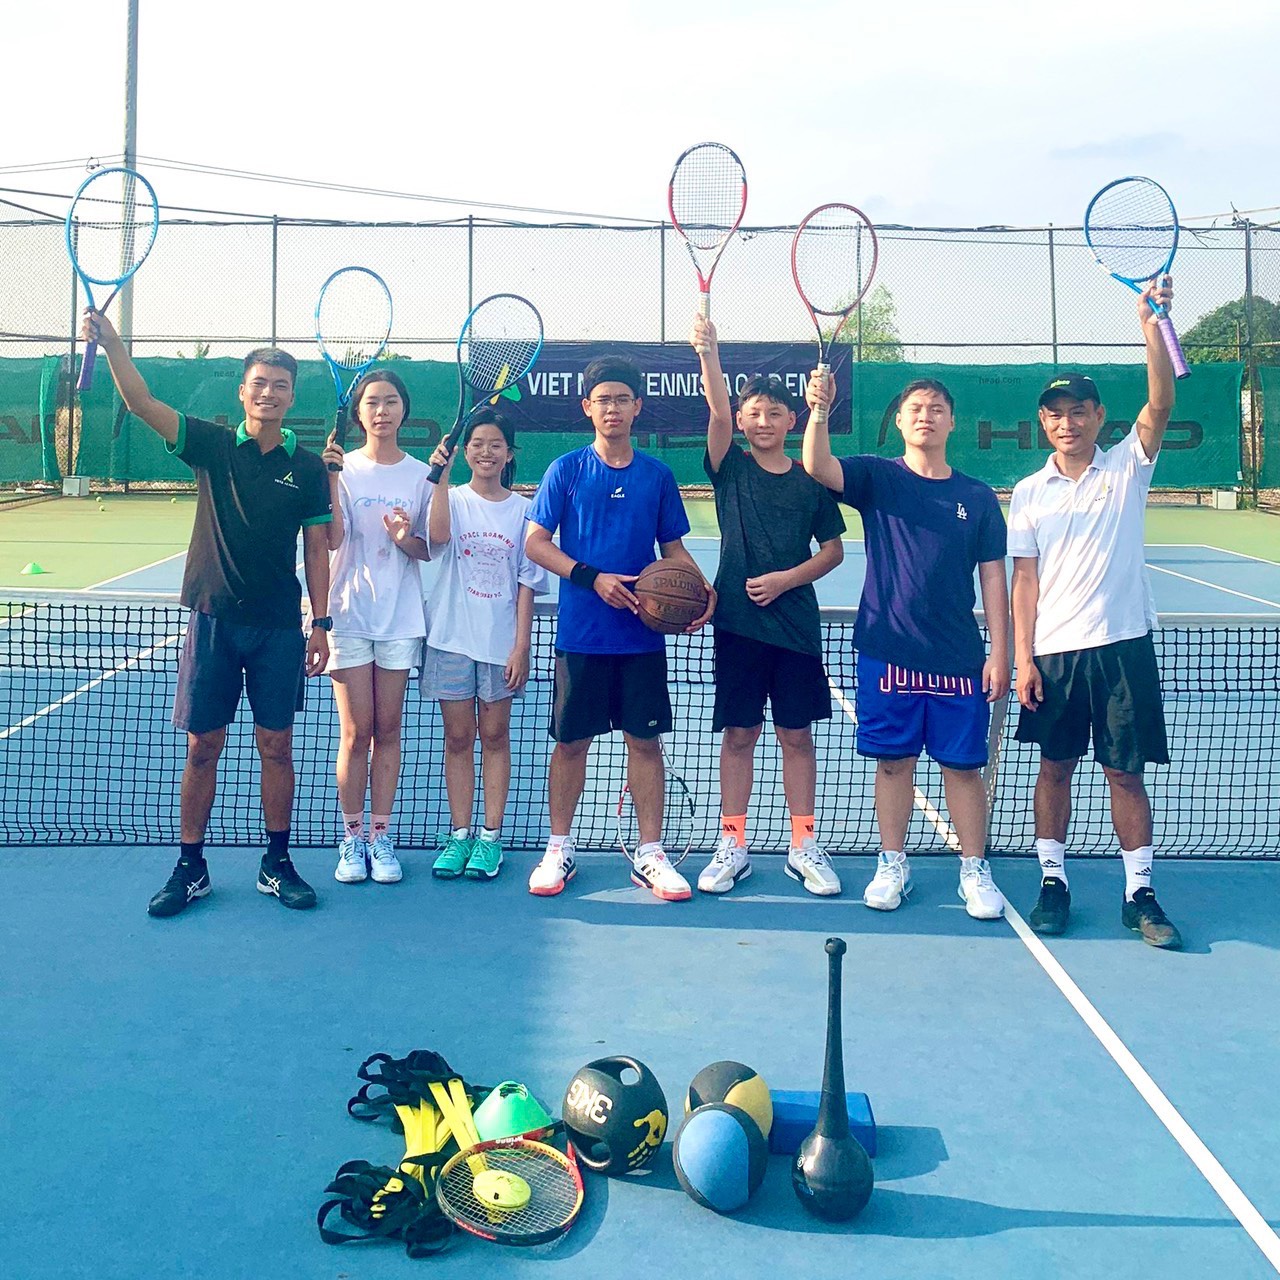 Lớp học Tennis đông học viên tại VNTA Academy